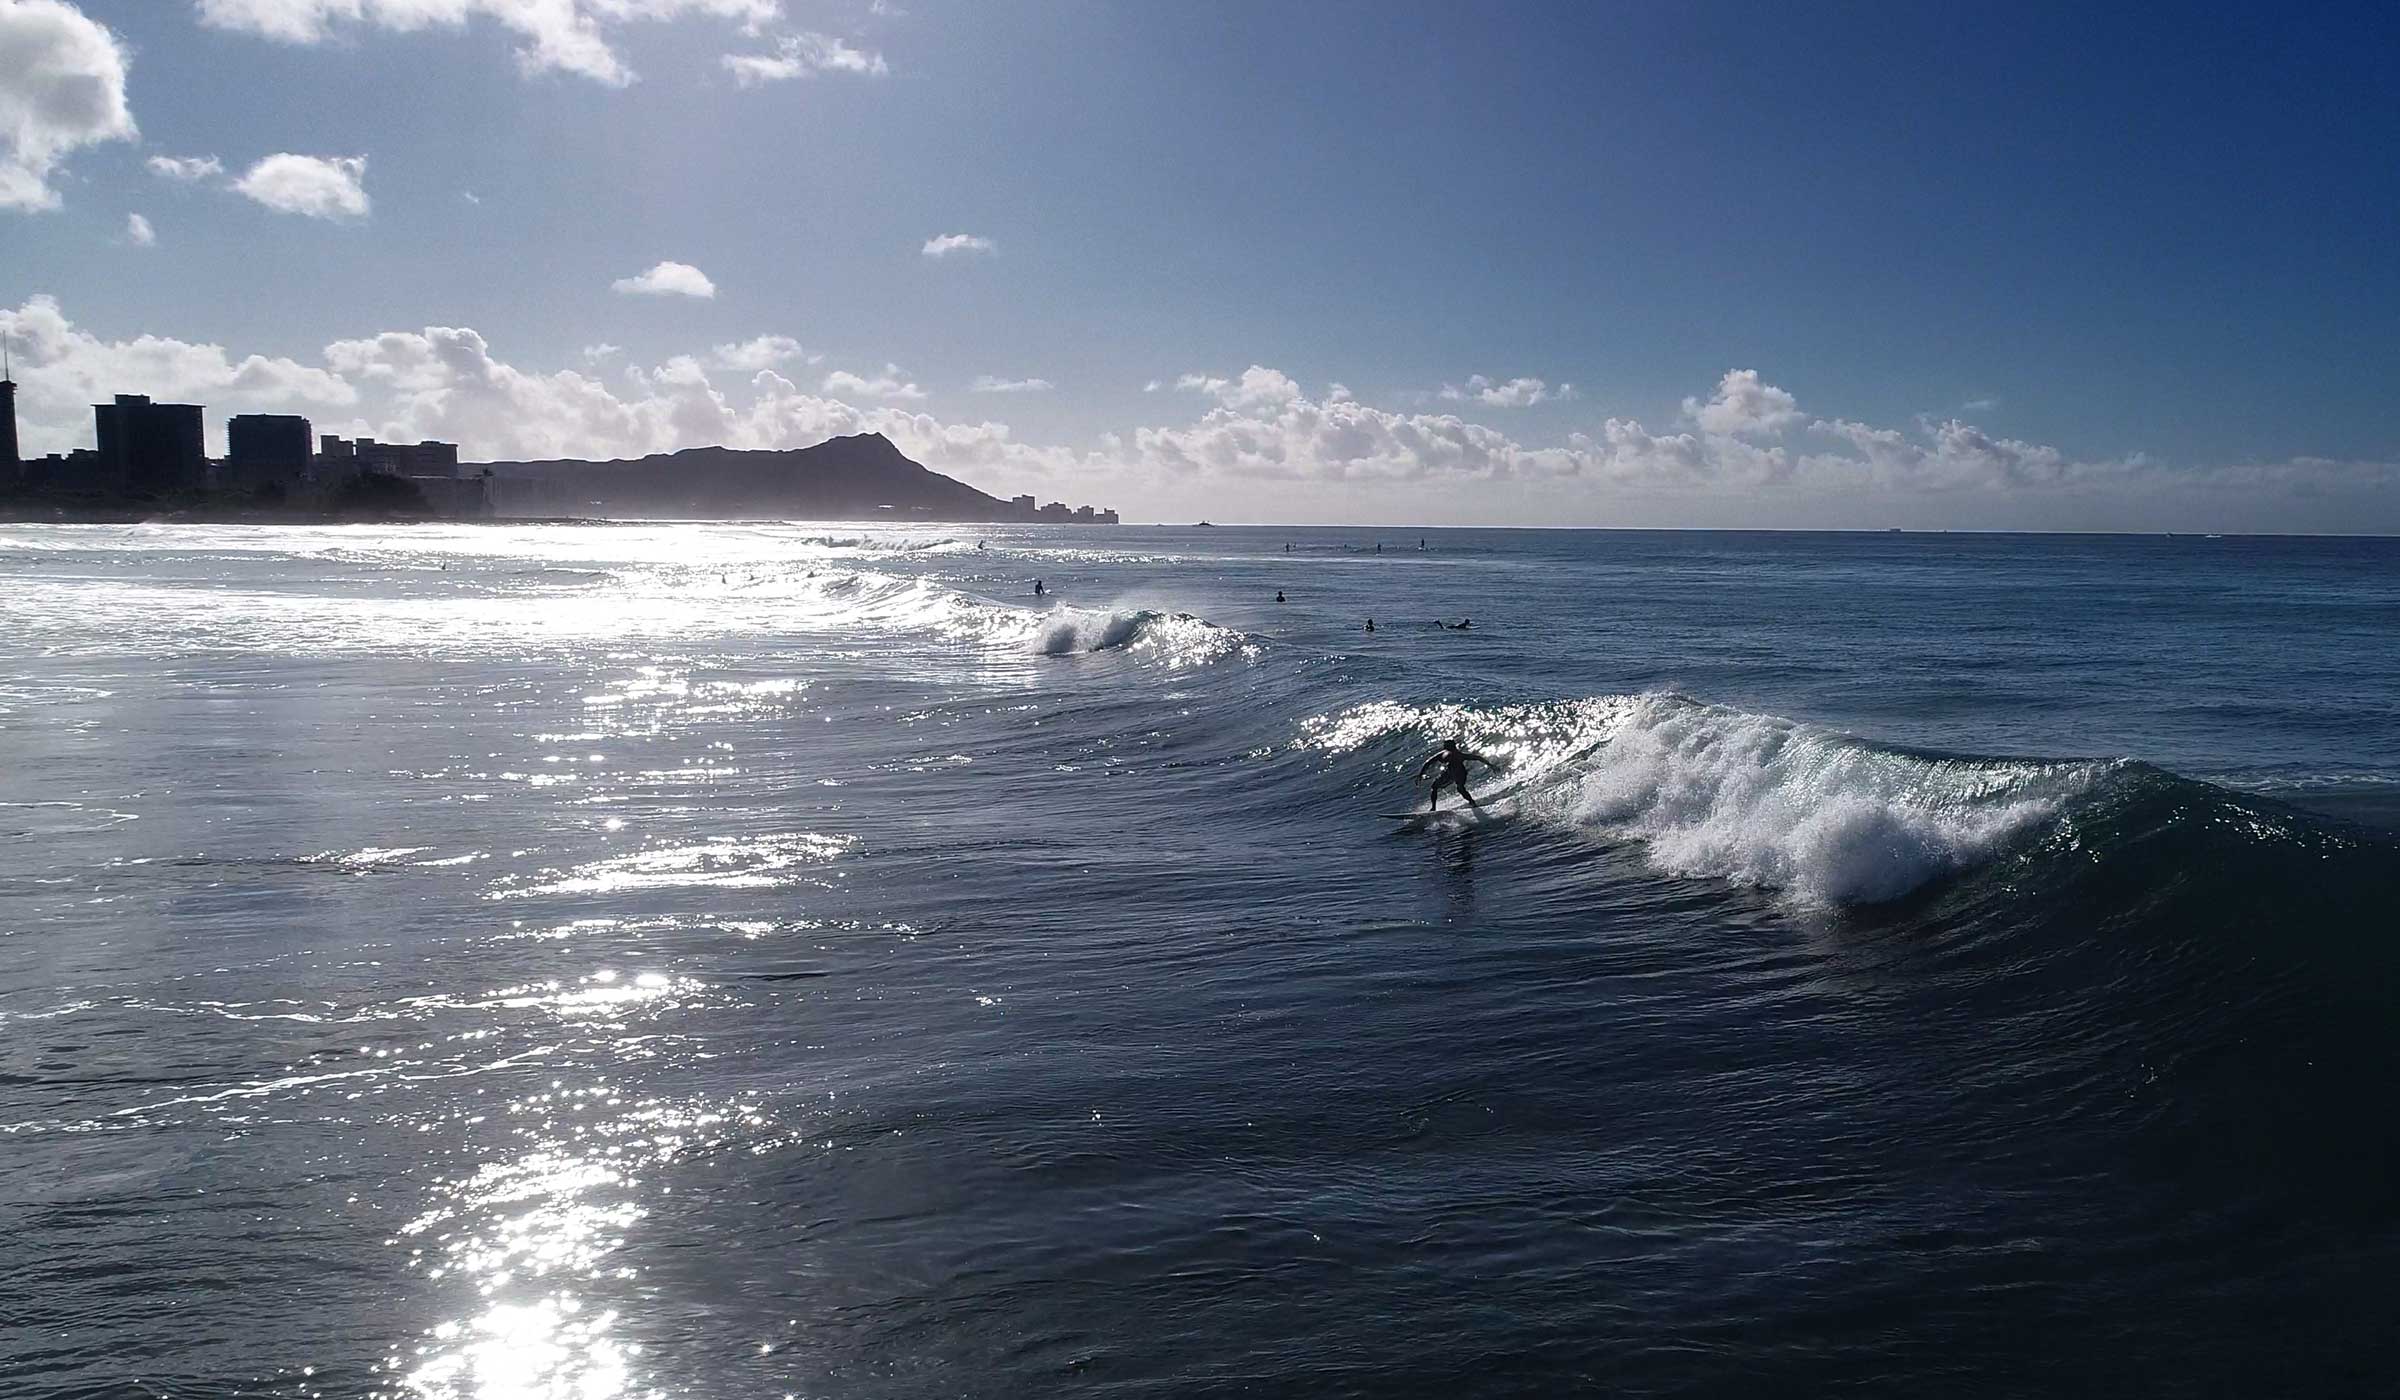 ハワイのサーフィンスクール アラモアナビーチサーフレッスン